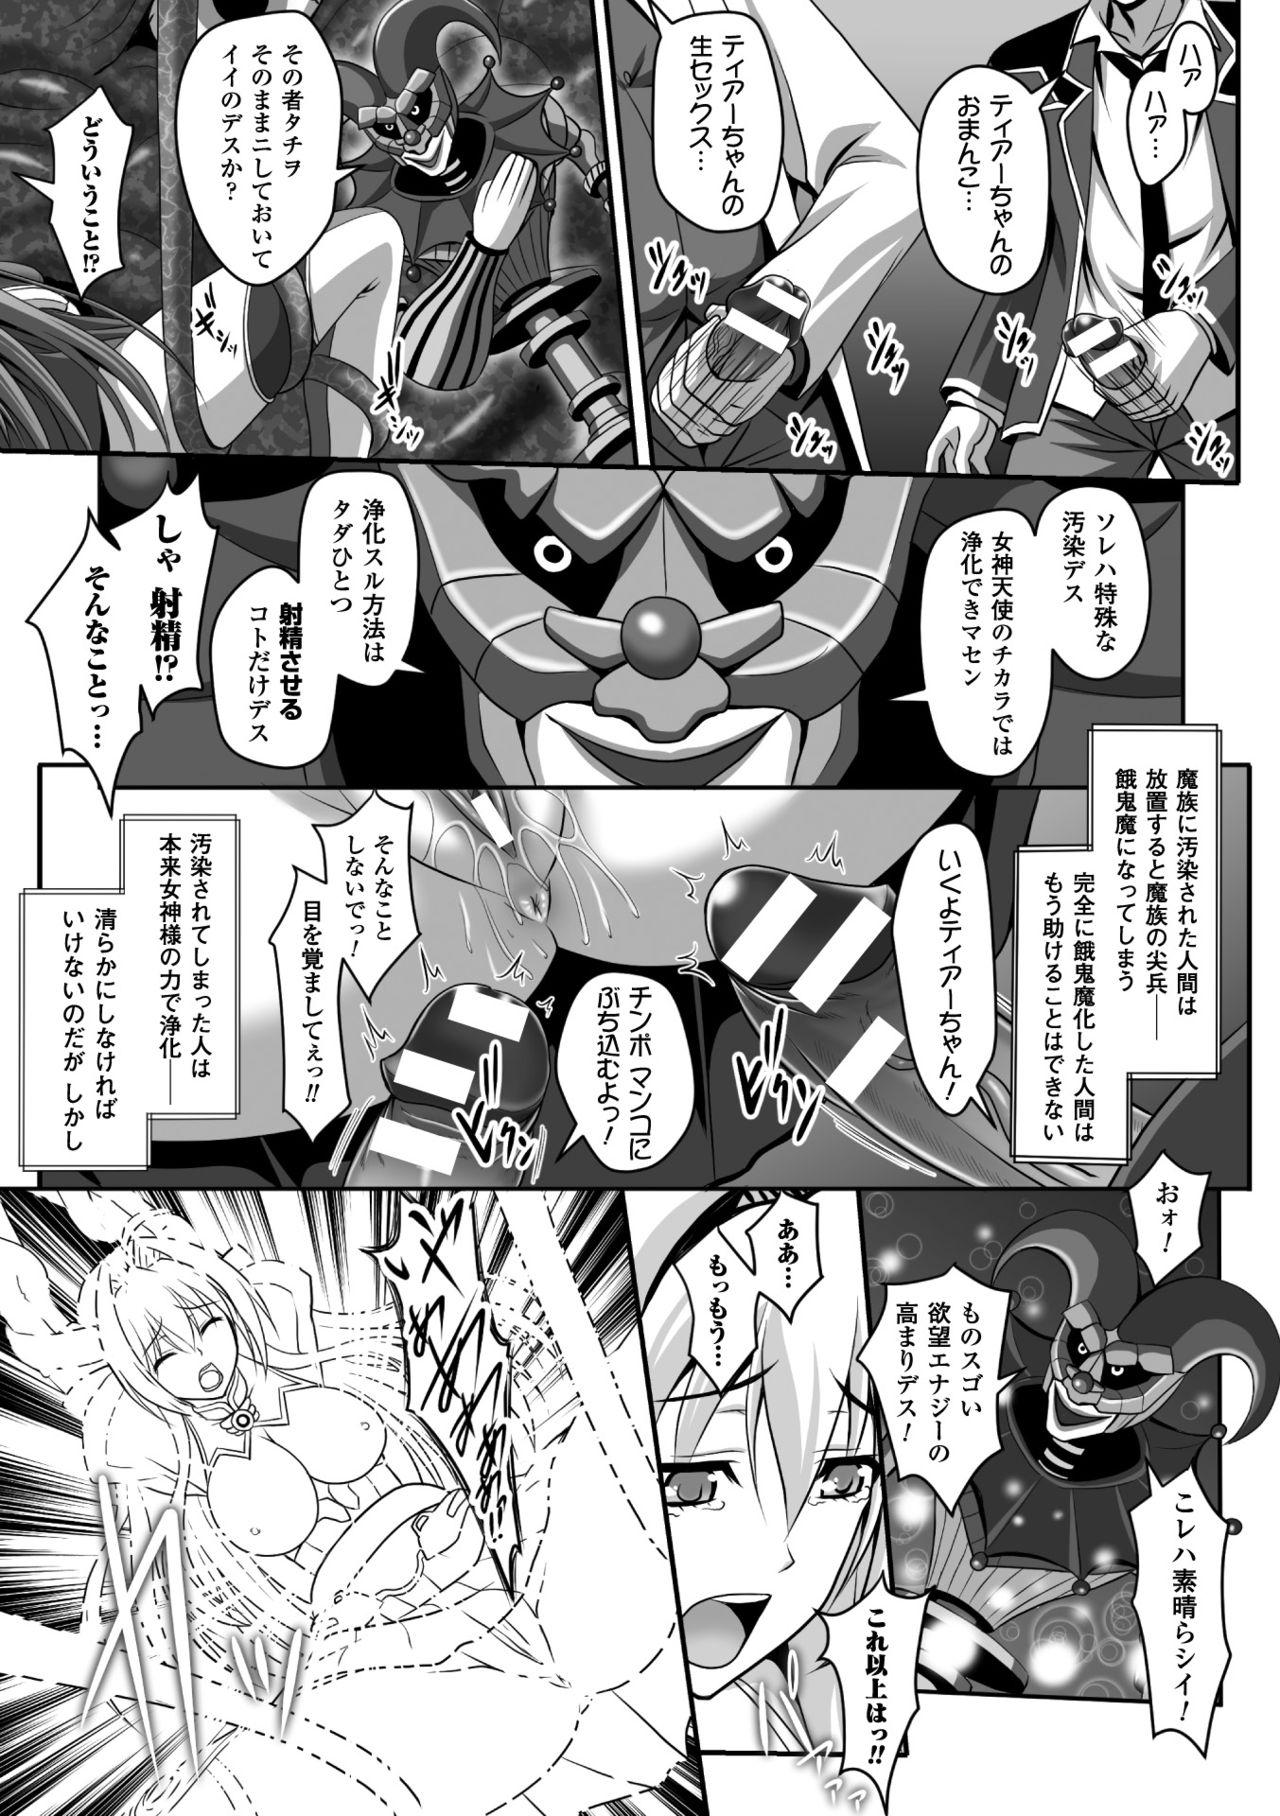 Sweet Seigi no Heroine Kangoku File Vol. 5 - Kuroinu kedakaki seijo wa hakudaku ni somaru Panocha - Page 9